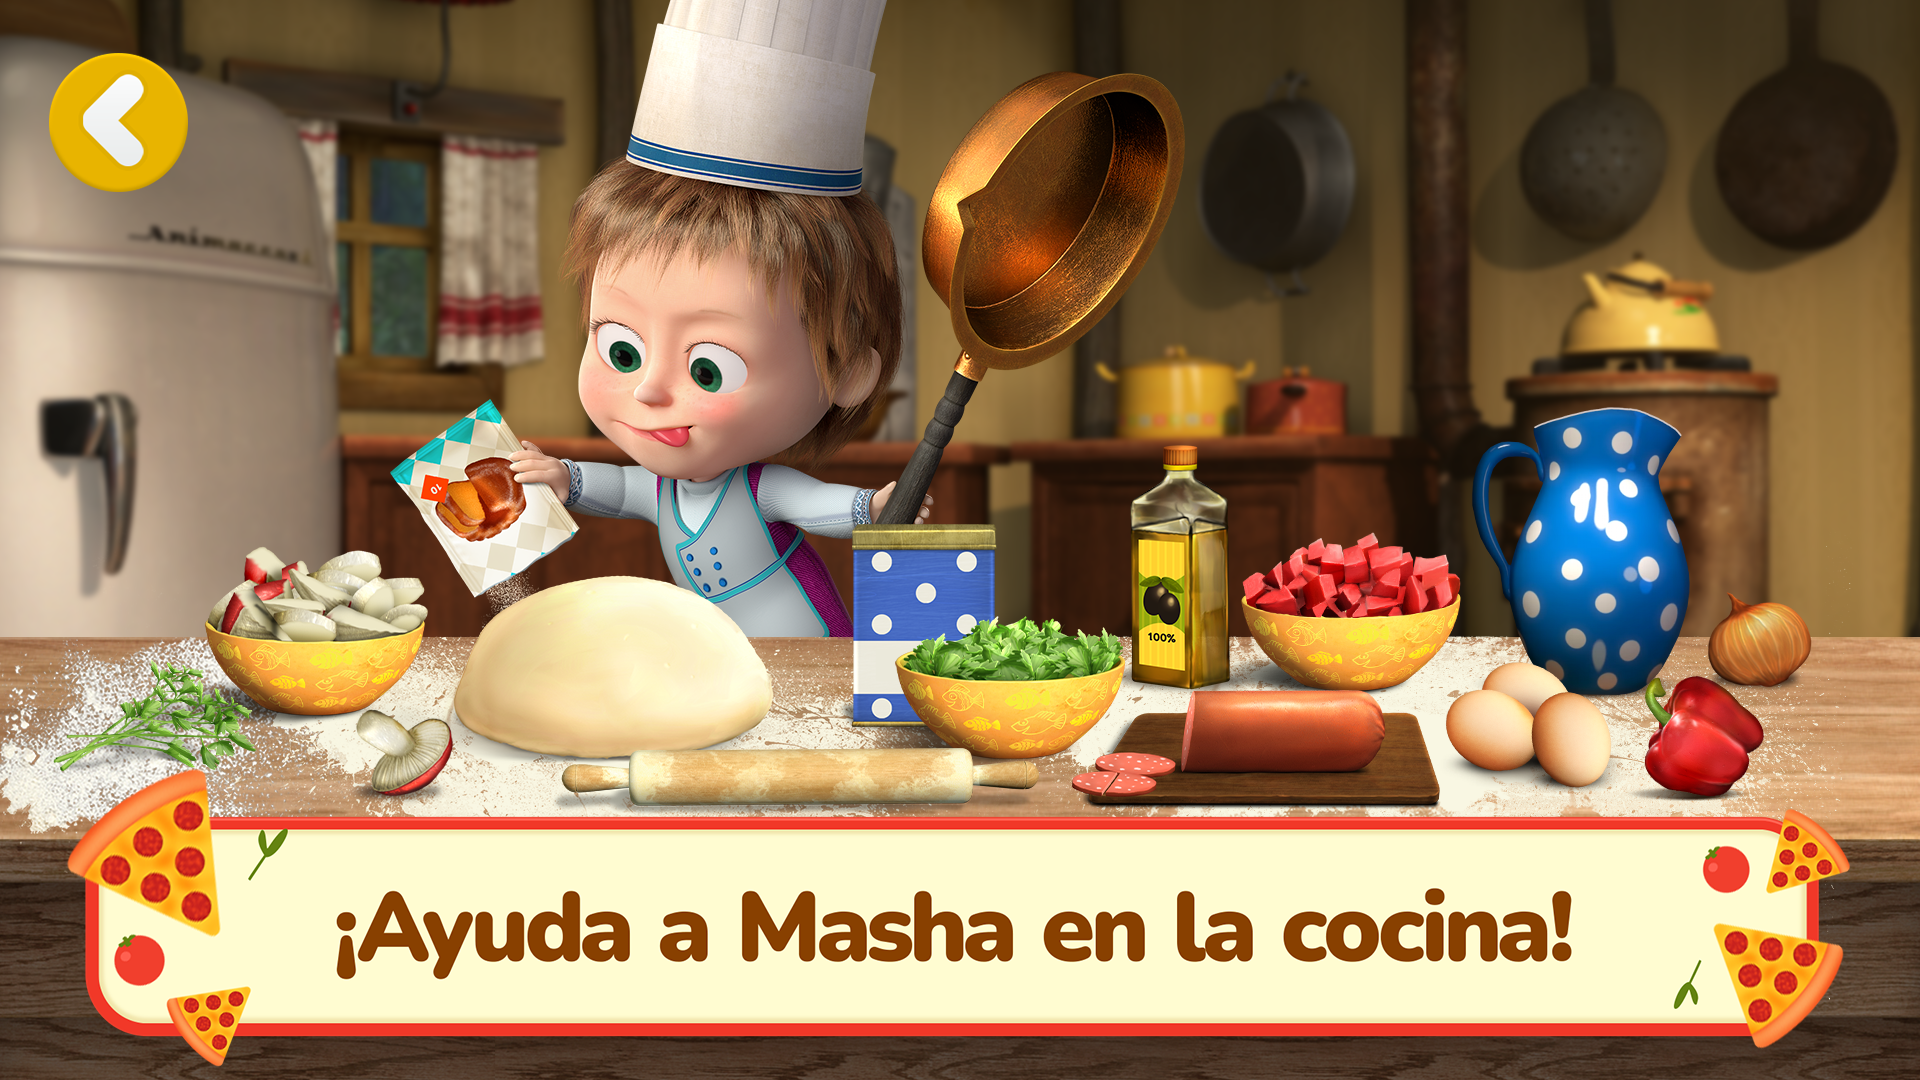 Screenshot 1 of Masha y el Oso Juegos de Pizza 1.4.12